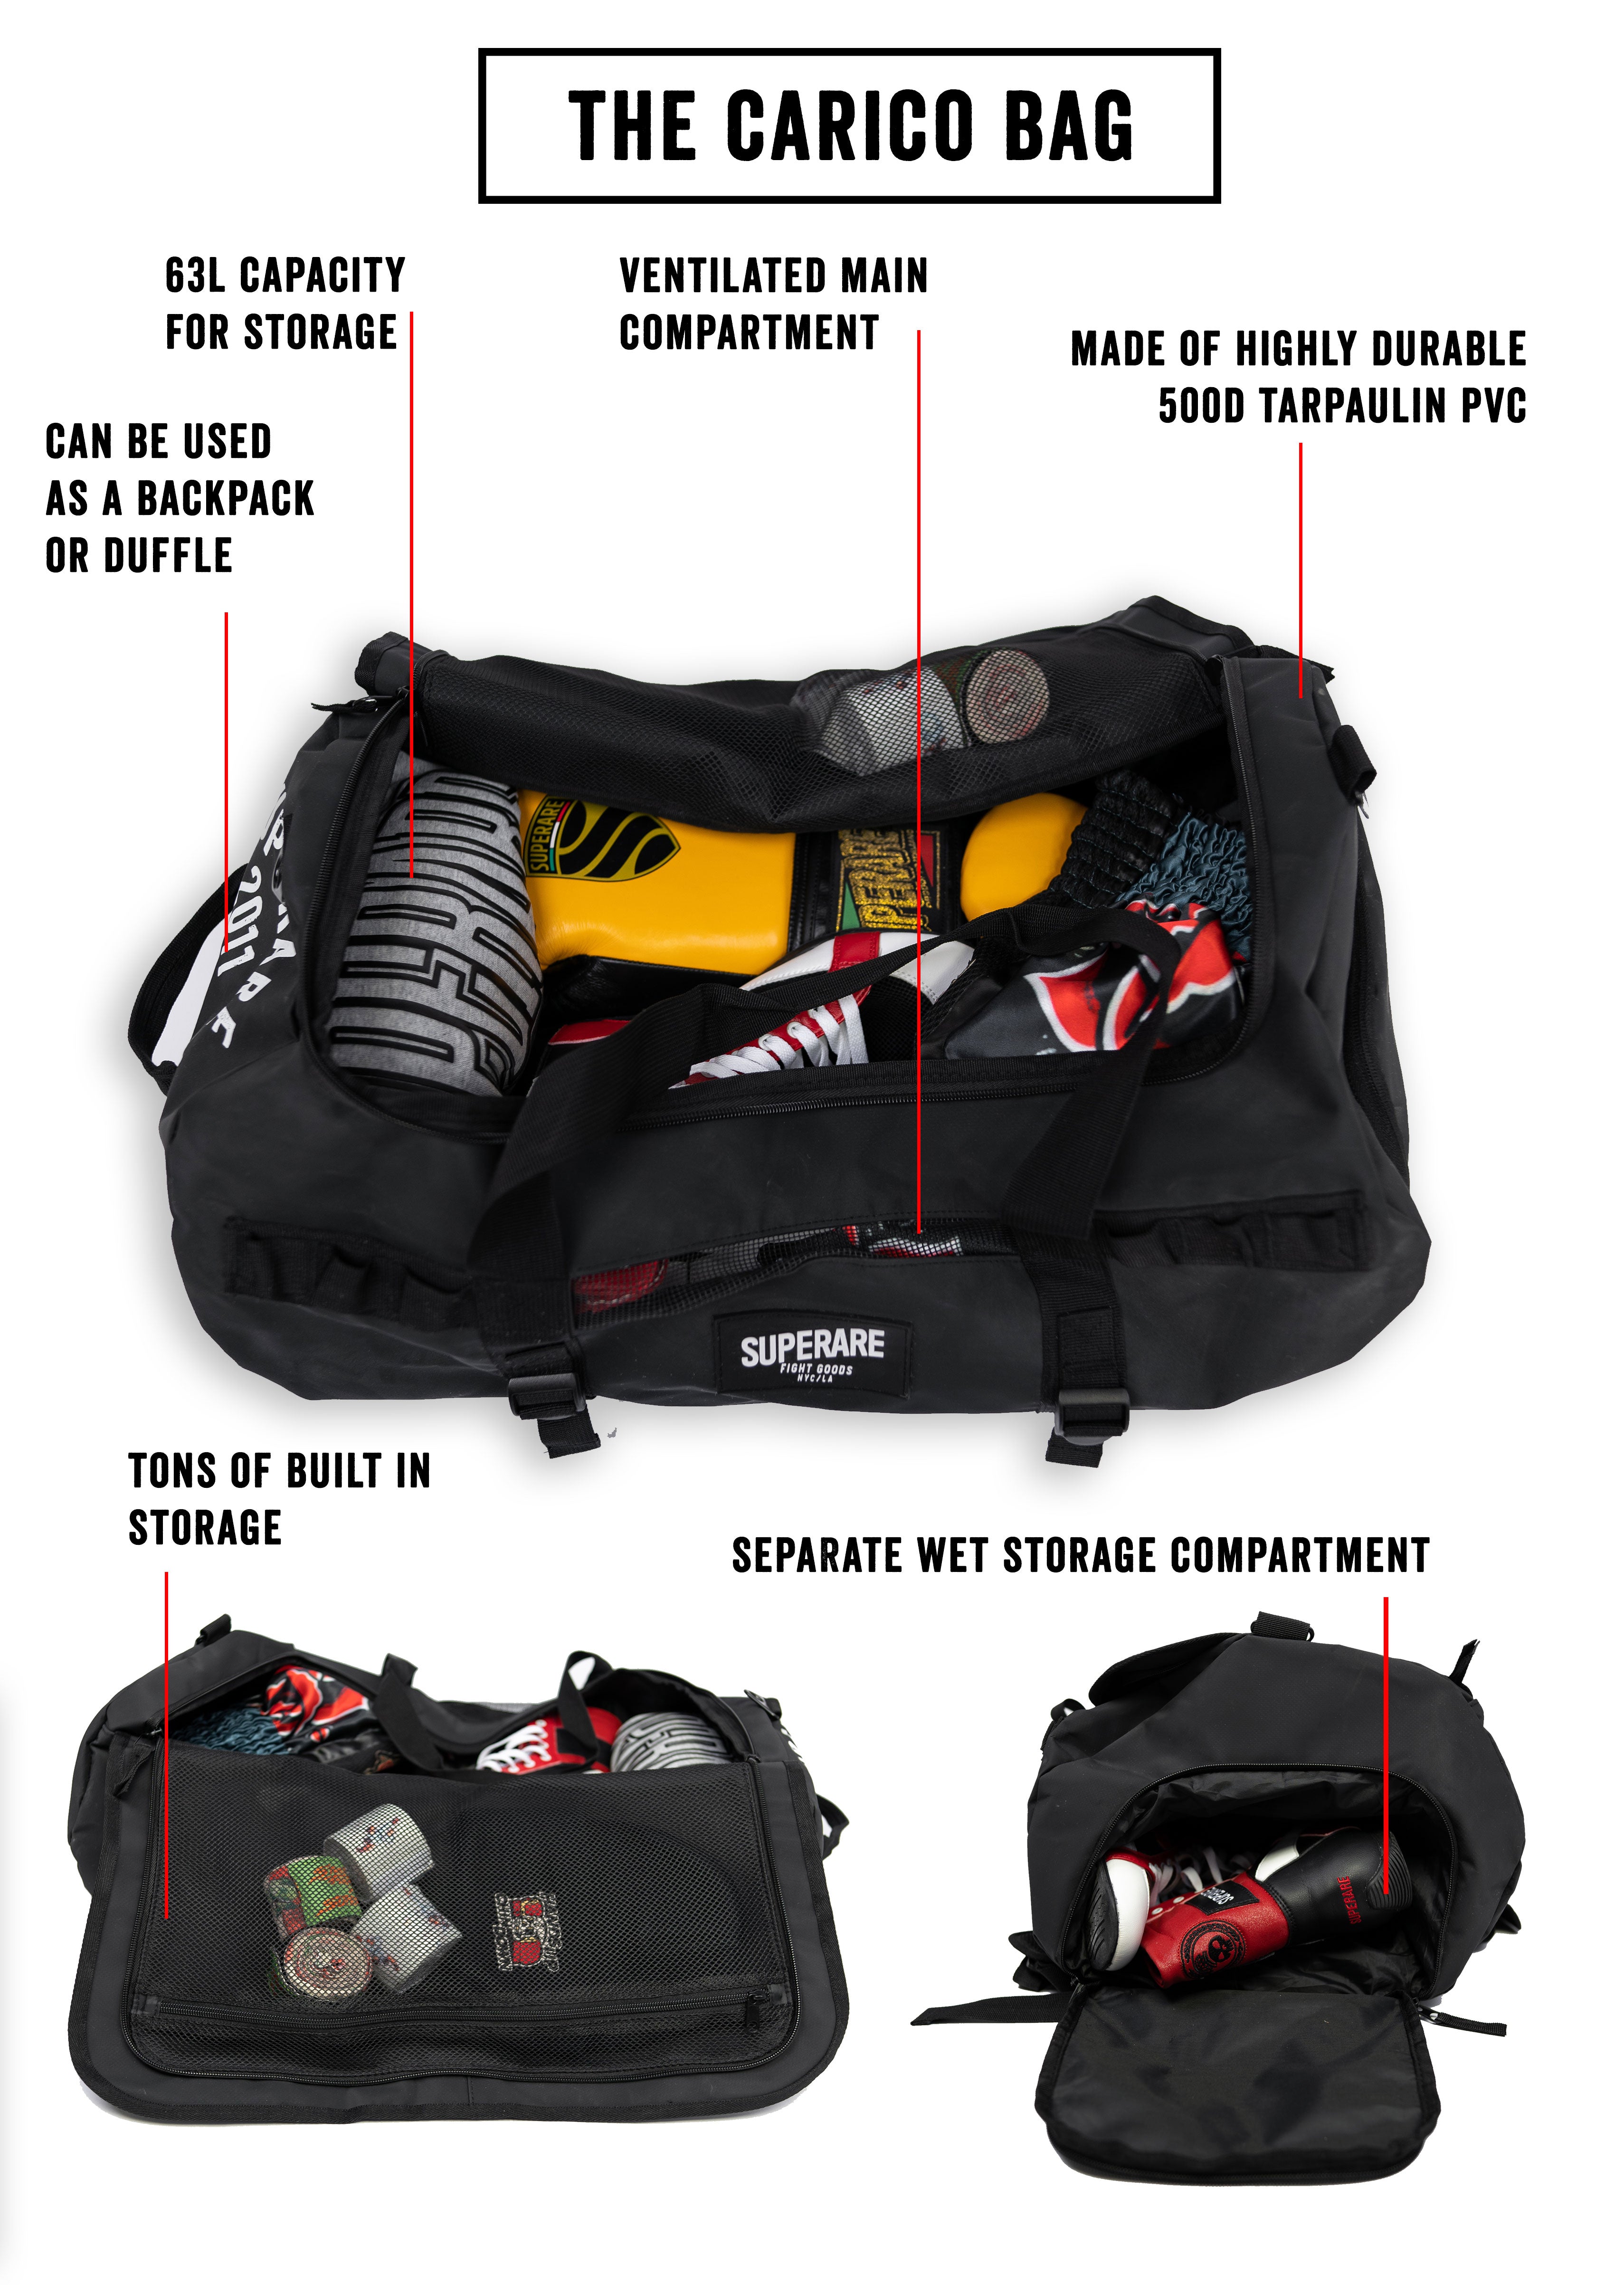 Superare 'Carico' Gear Bag – Superare Fight Shop